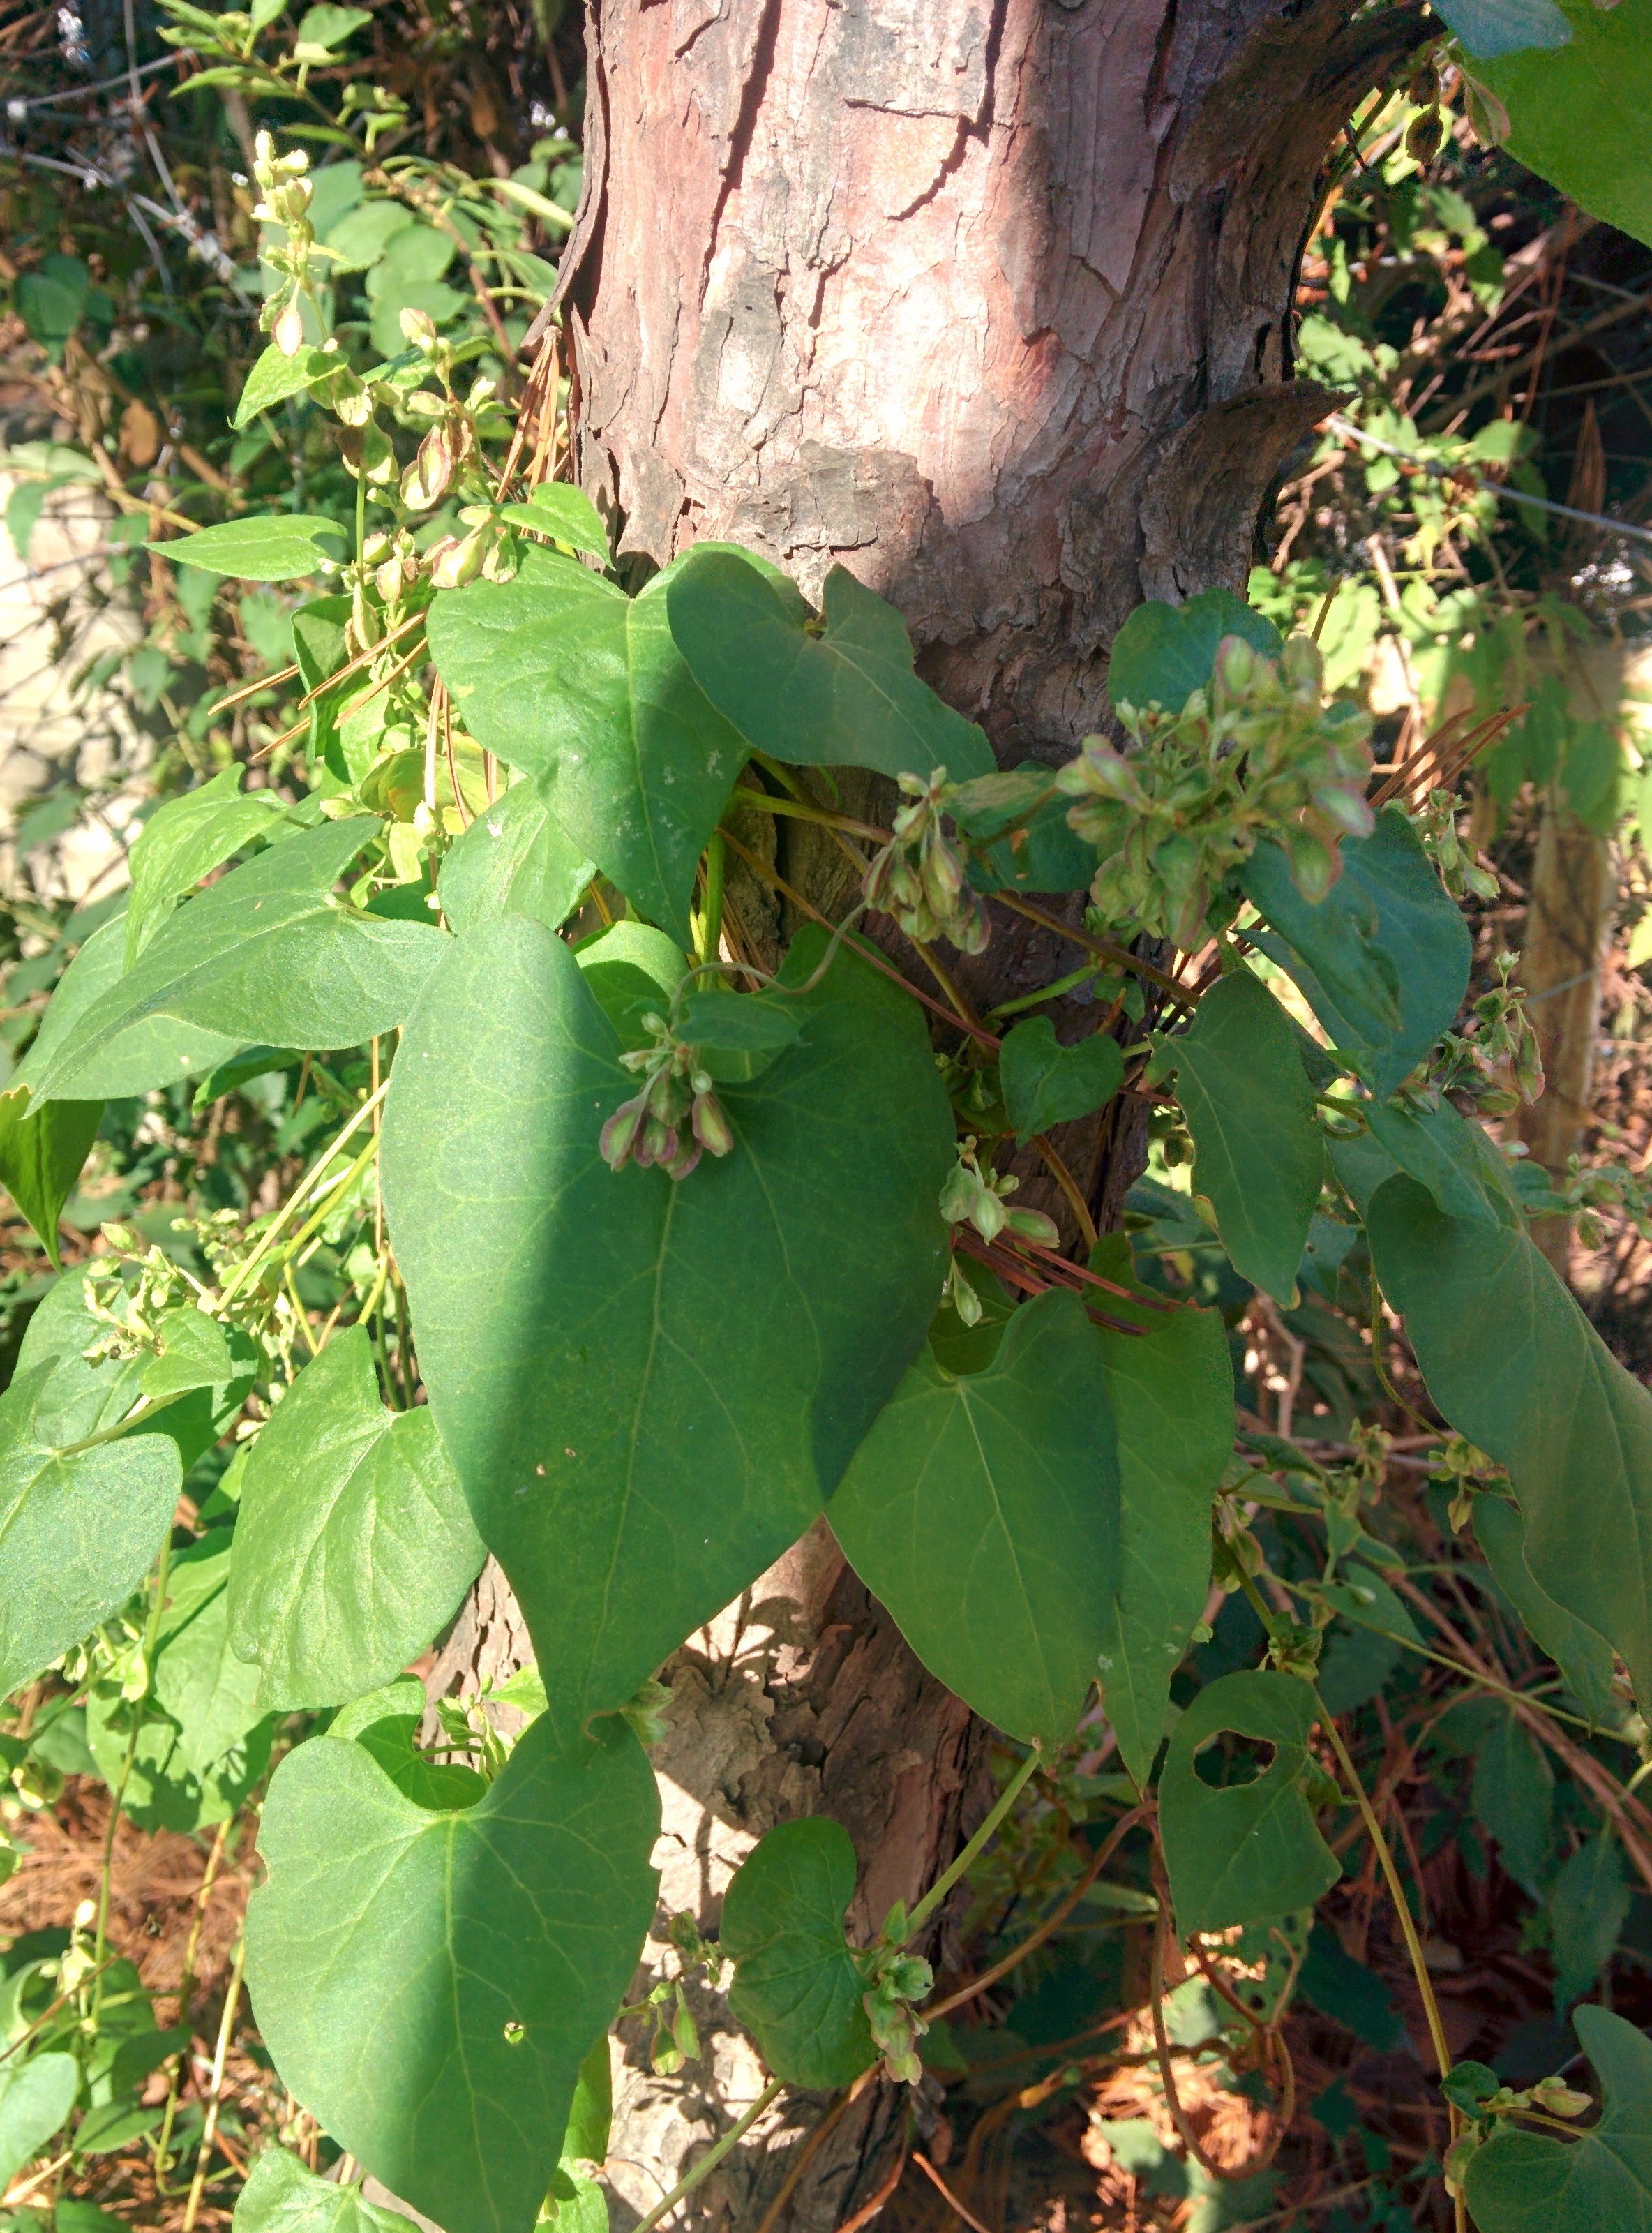 IMG_20151015_151455.jpg 소나무를 타고 오른 덩굴식물의 열매 (잎은 박주가리 닮았다) -- 하수오(적하수오)